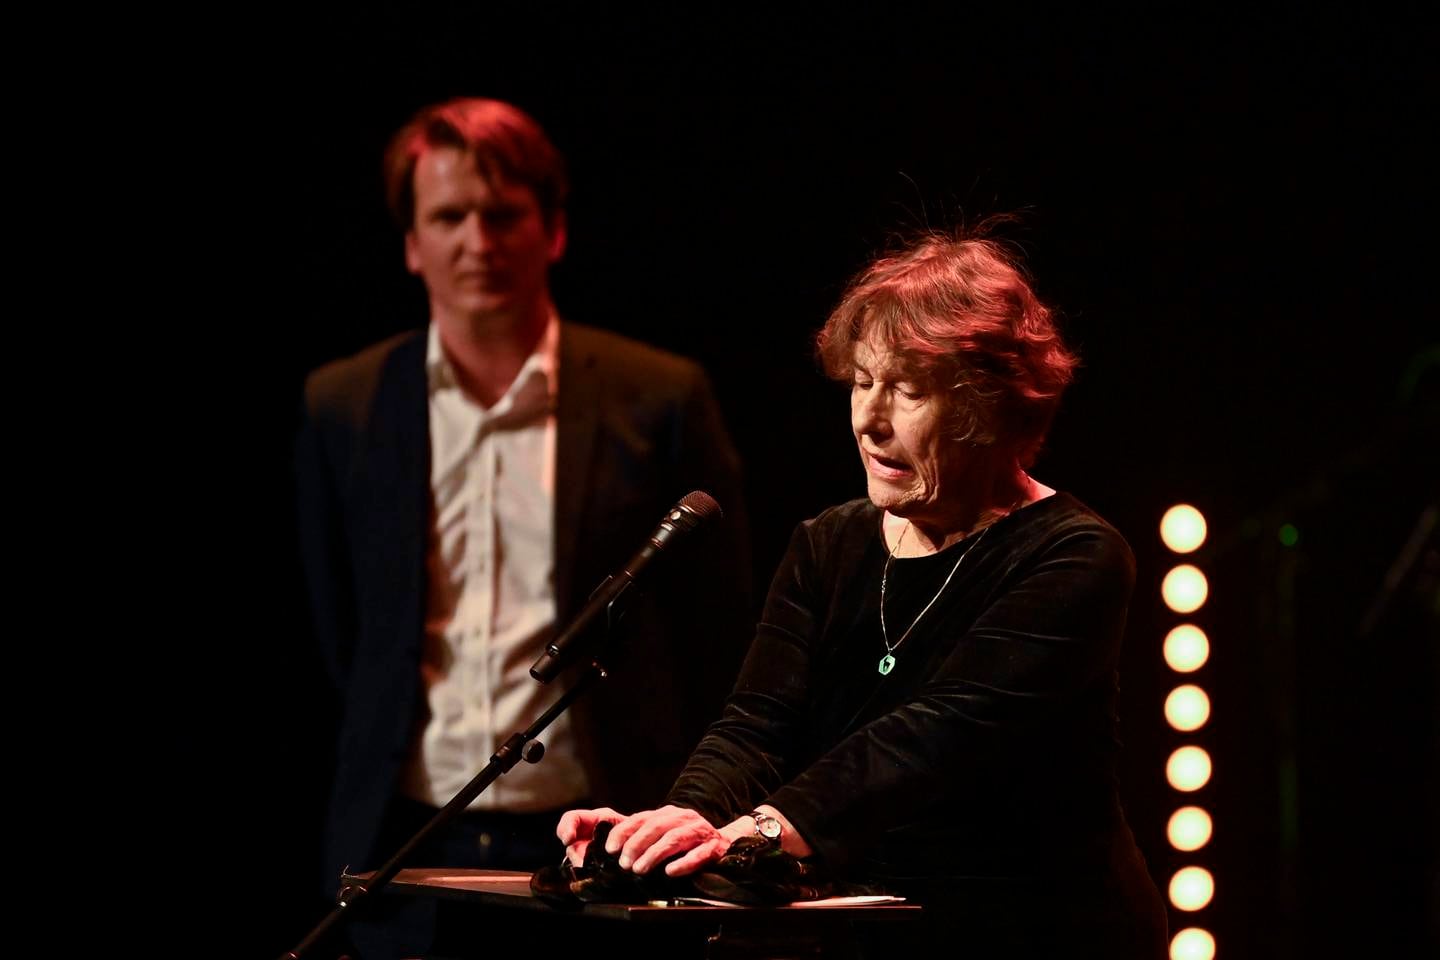 Liv Køltzow ble tildelt hedersprisen under utdelingen av Brageprisen 2021 på Dansens Hus i Oslo.
Foto: Annika Byrde / NTB